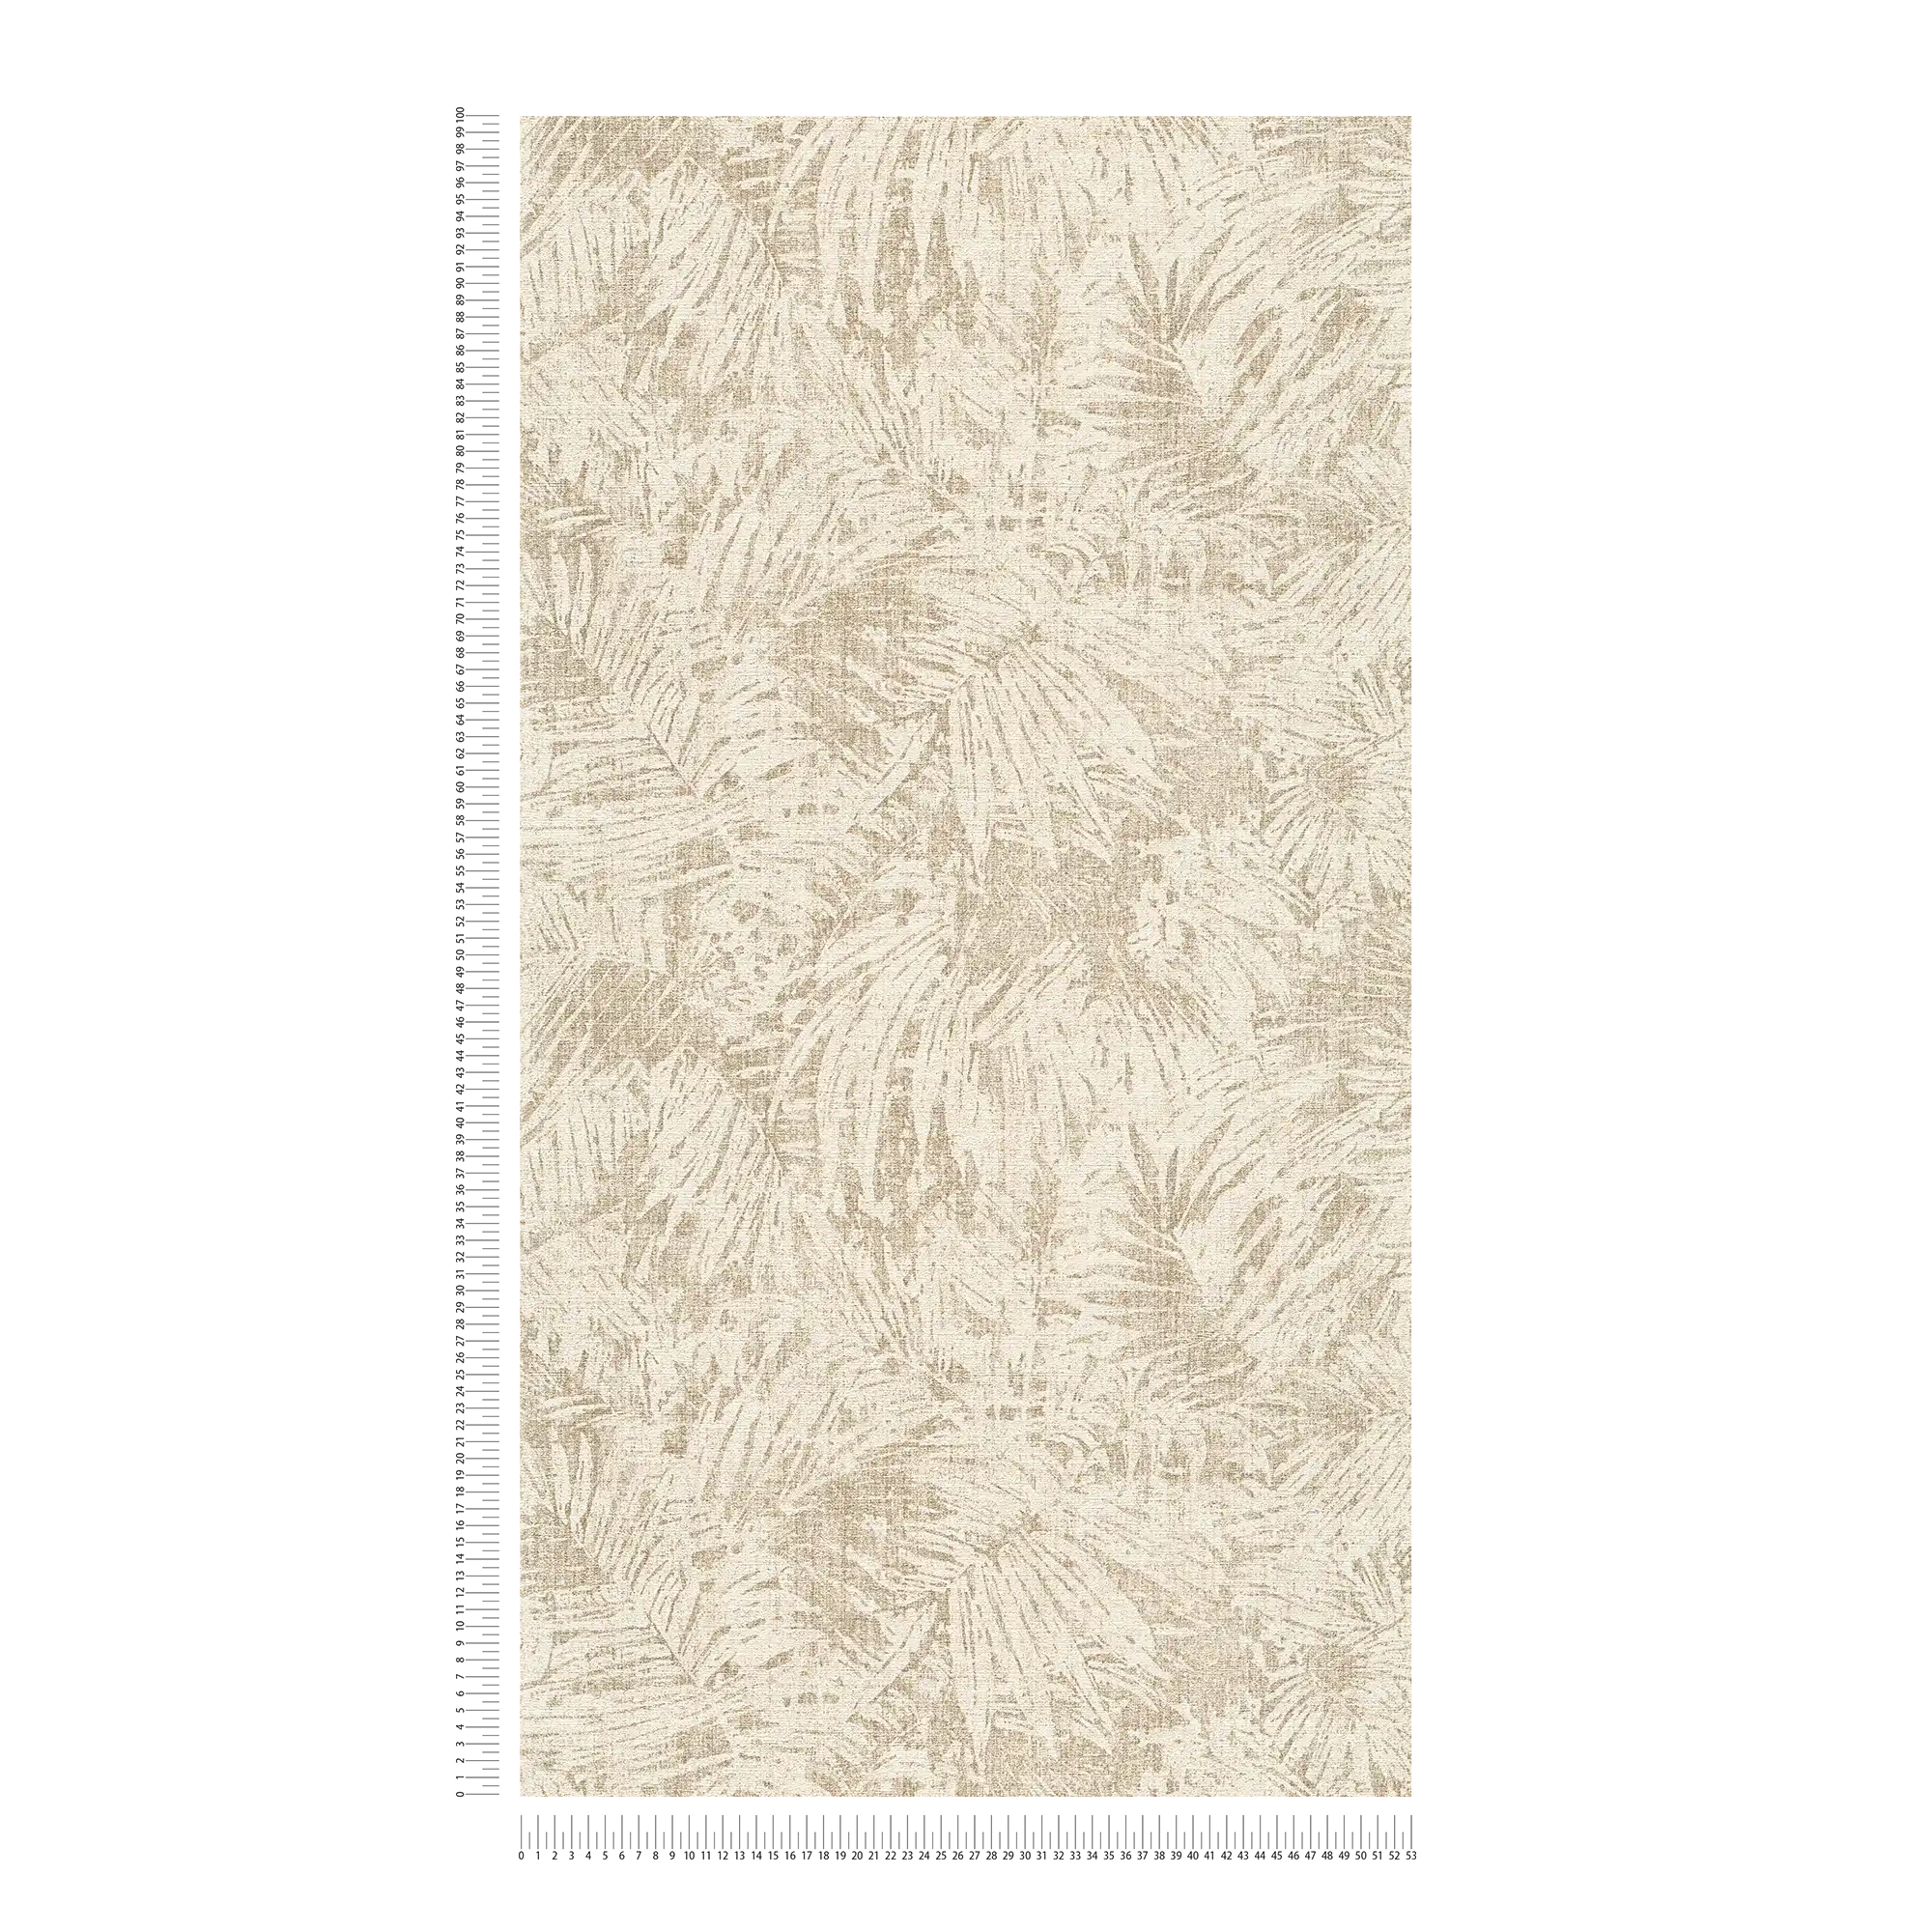             Wallpaper leaves pattern & linen effect in colonial style - Brown, Beige
        